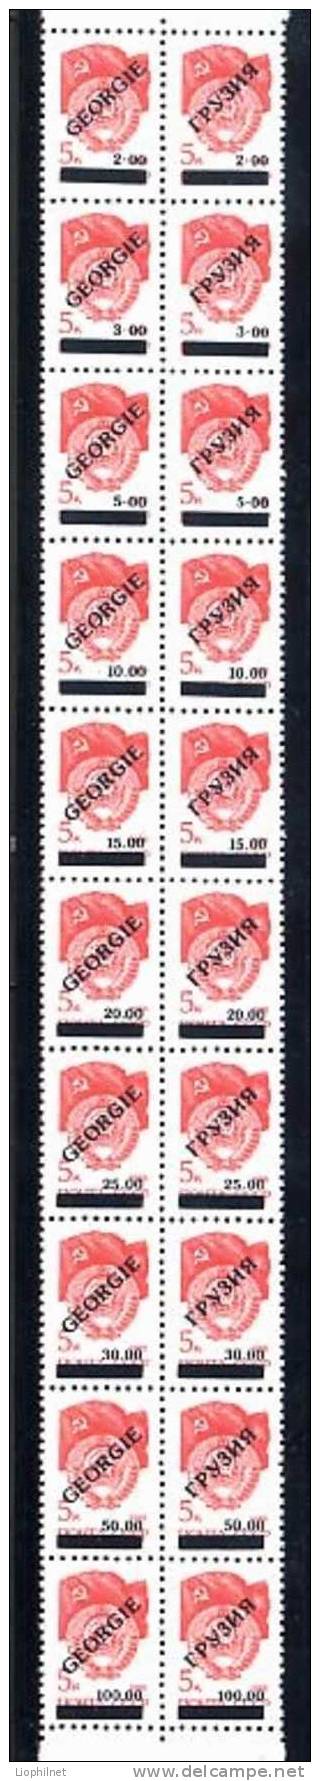 1992, 20 Valeurs SURCHARGES Sur URSS Yvert 5581a. R429b - Stamps